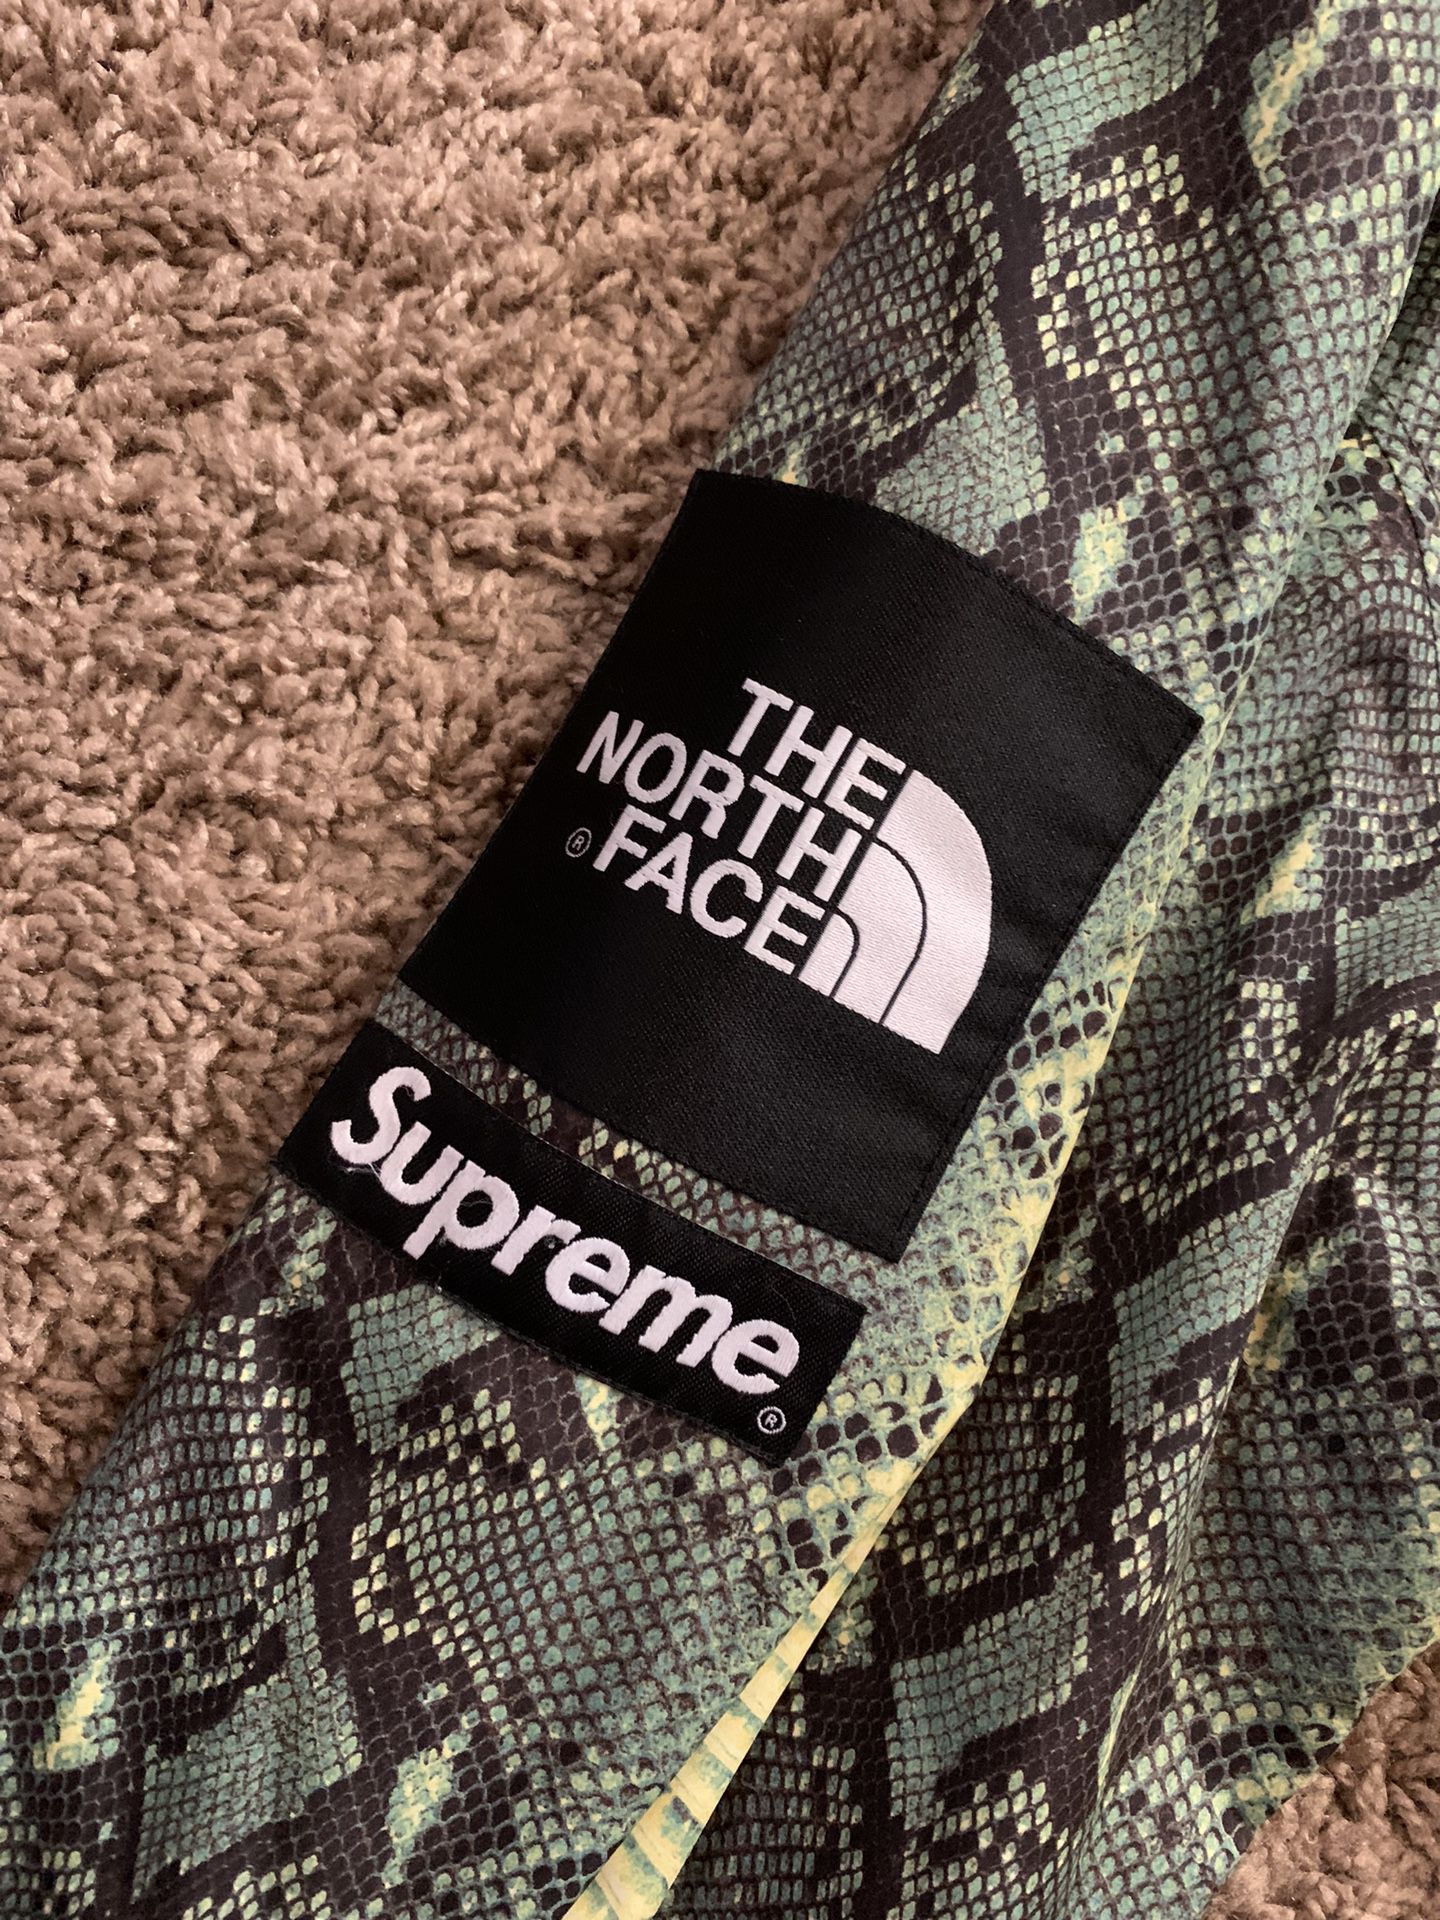 North Face x Supreme Snakeskin Jacket